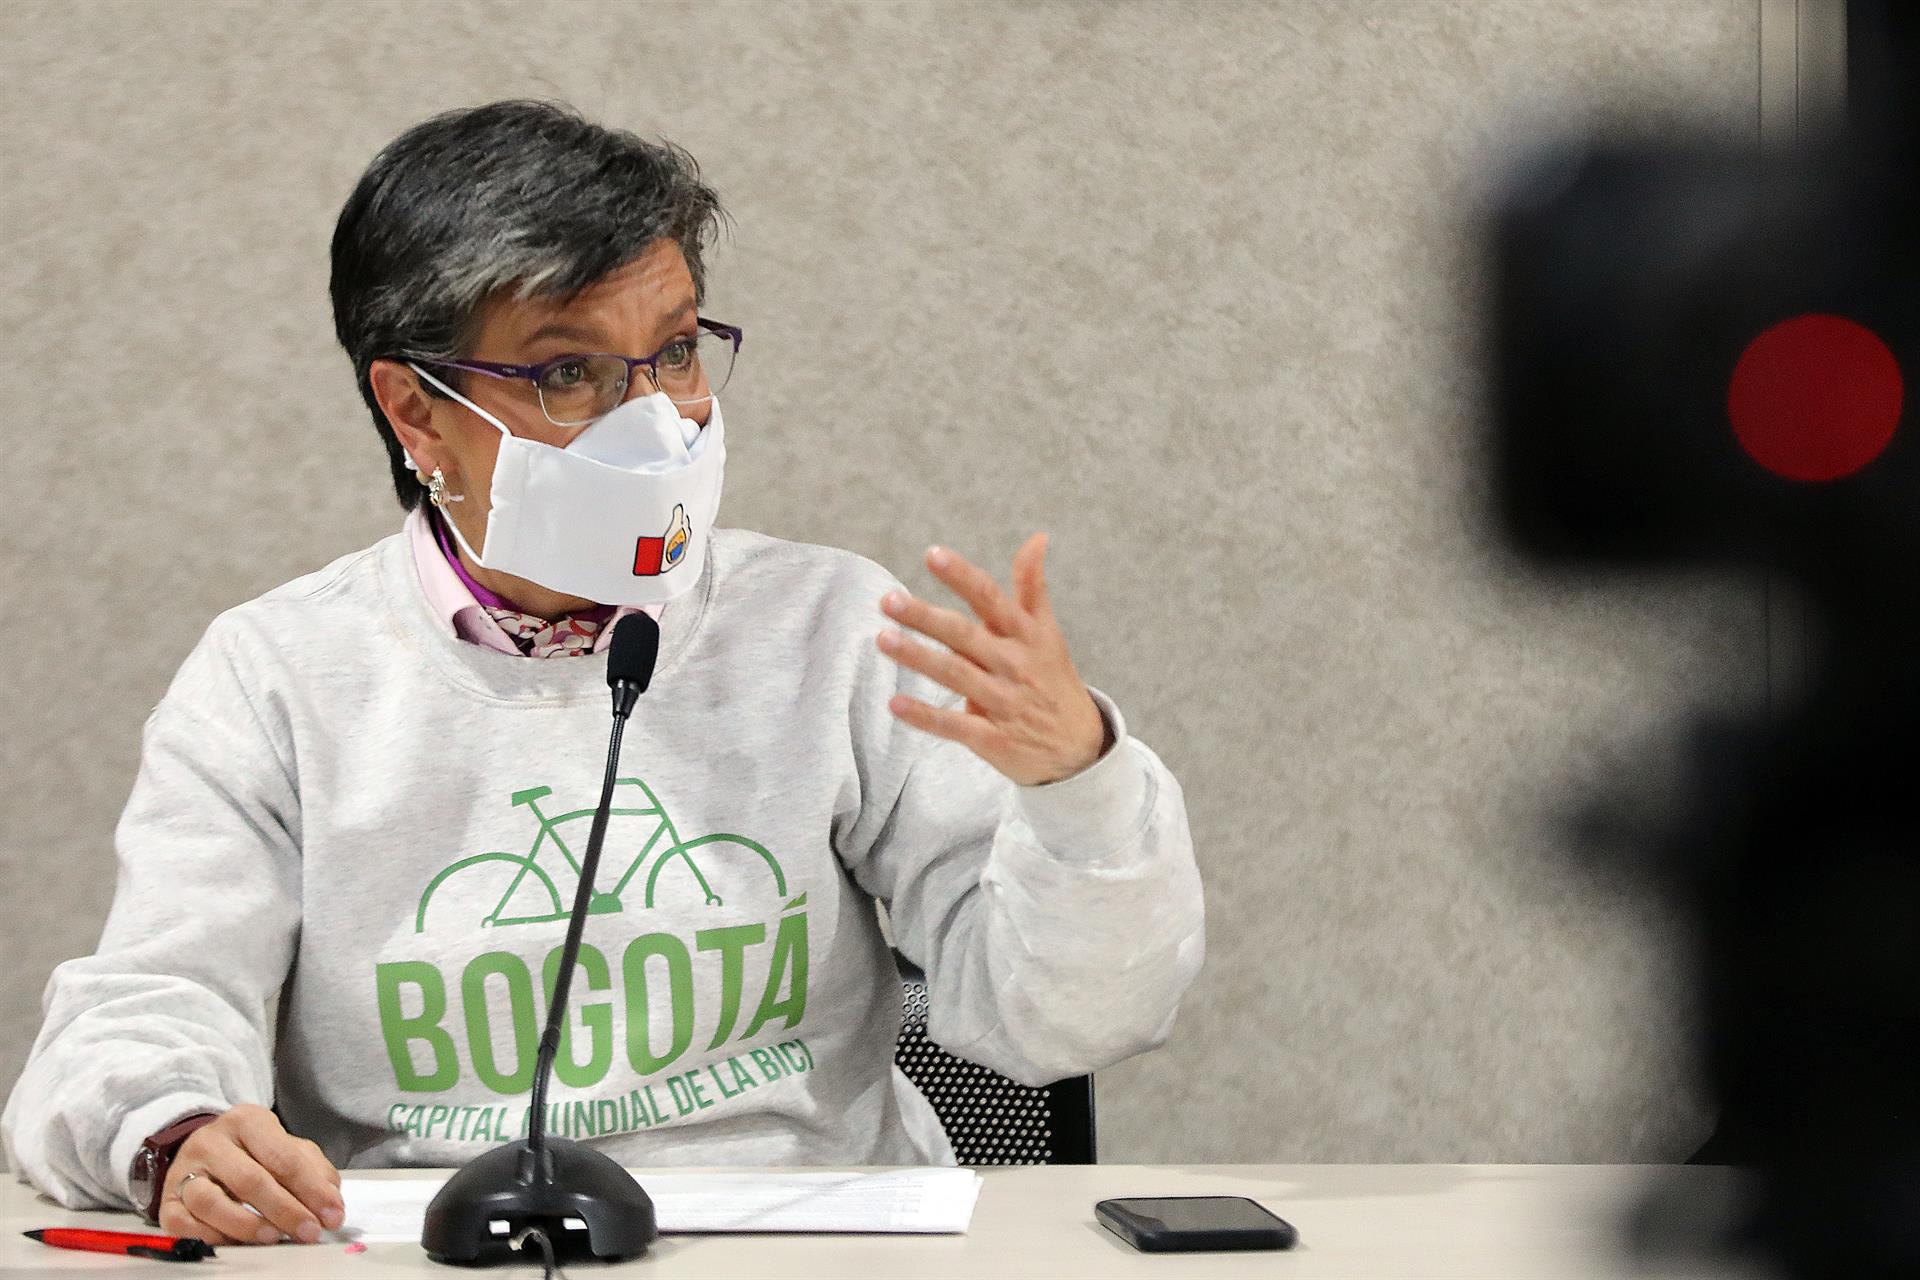 Alcaldesa de Bogotá dice que criminalidad y terrorismo amenazan a la ciudad